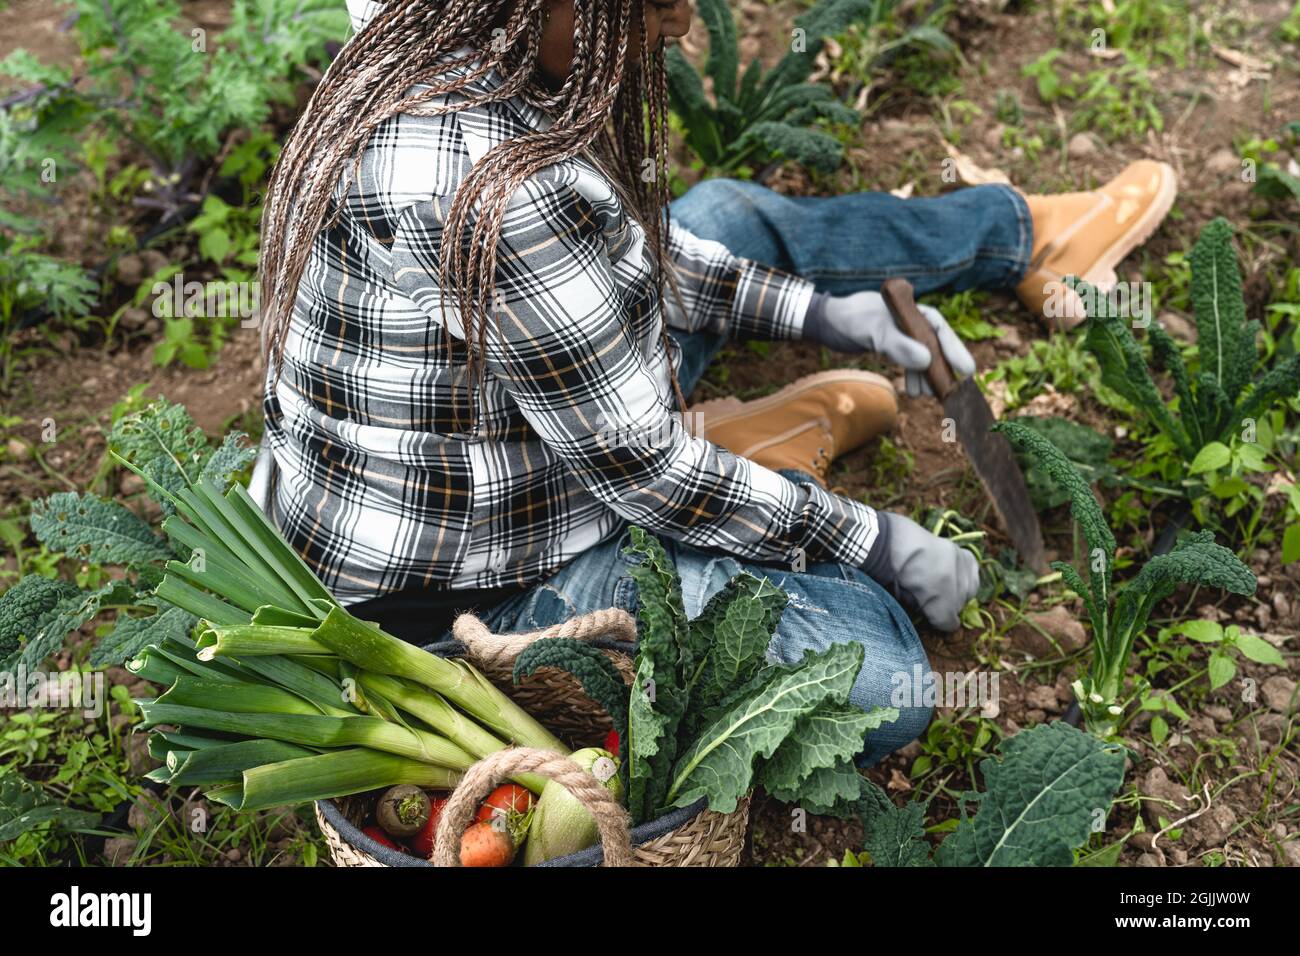 Agricultrice africaine travaillant dans les terres agricoles récoltant des légumes frais - Concept de mode de vie des agriculteurs Banque D'Images